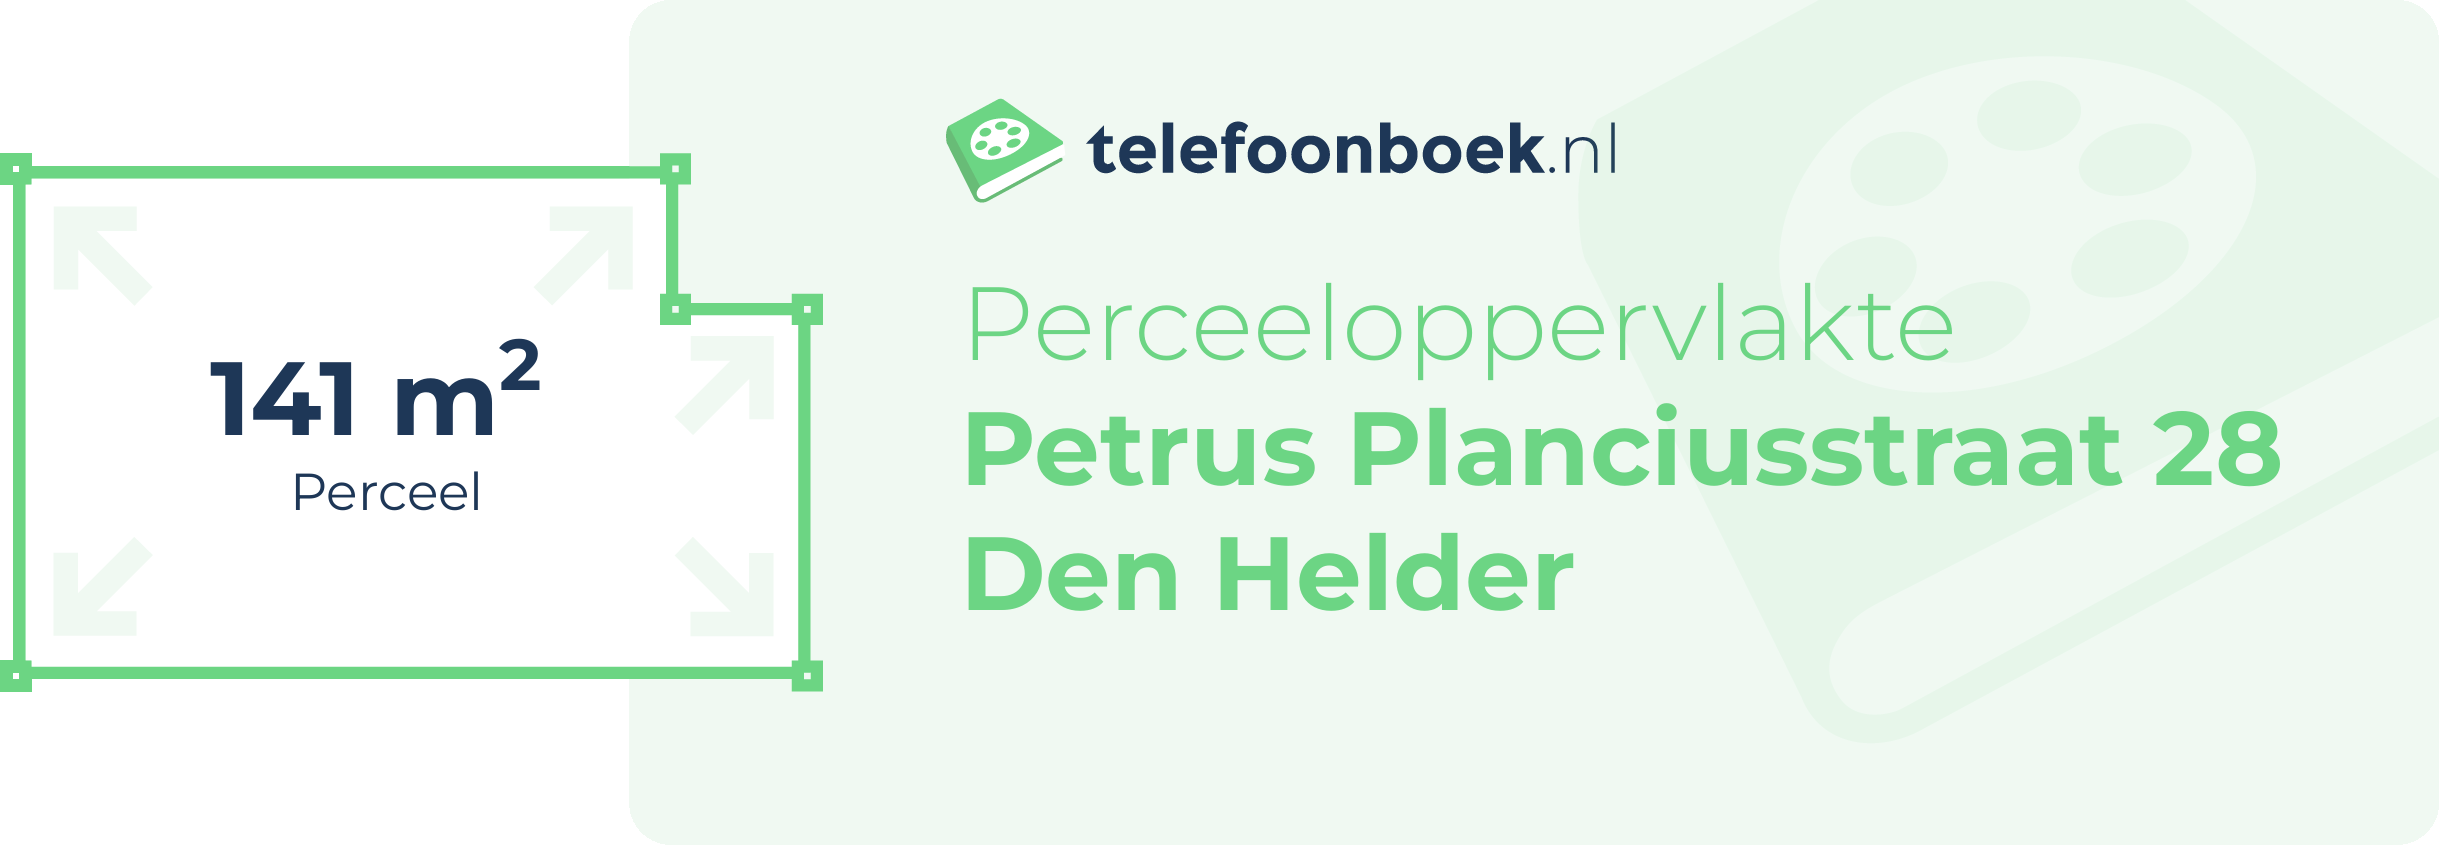 Perceeloppervlakte Petrus Planciusstraat 28 Den Helder